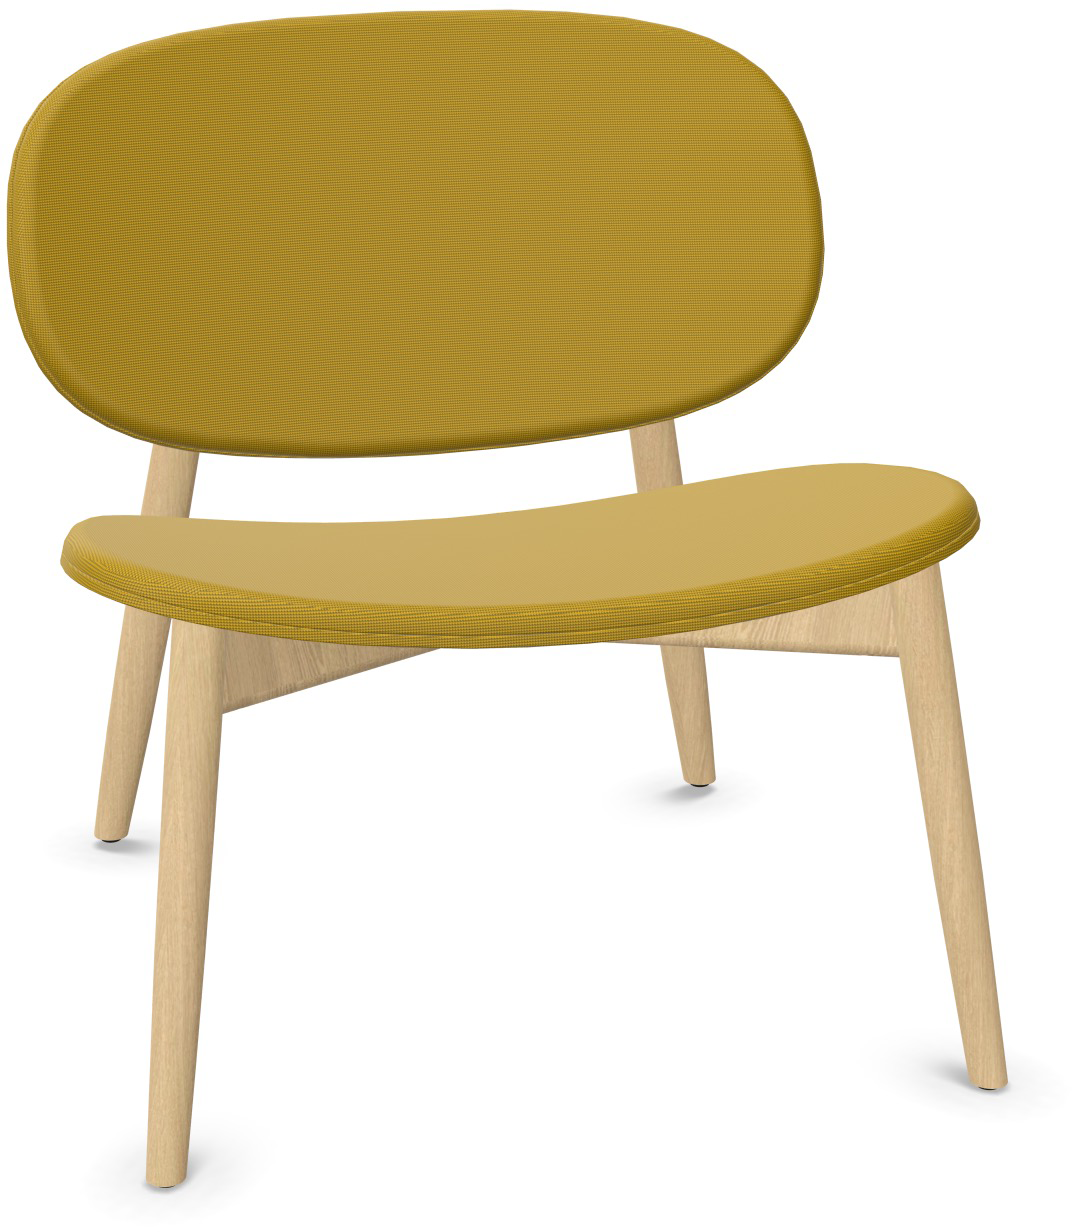 HARMO Relaxsessel in Senfgelb präsentiert im Onlineshop von KAQTU Design AG. Sessel ist von Infiniti Design